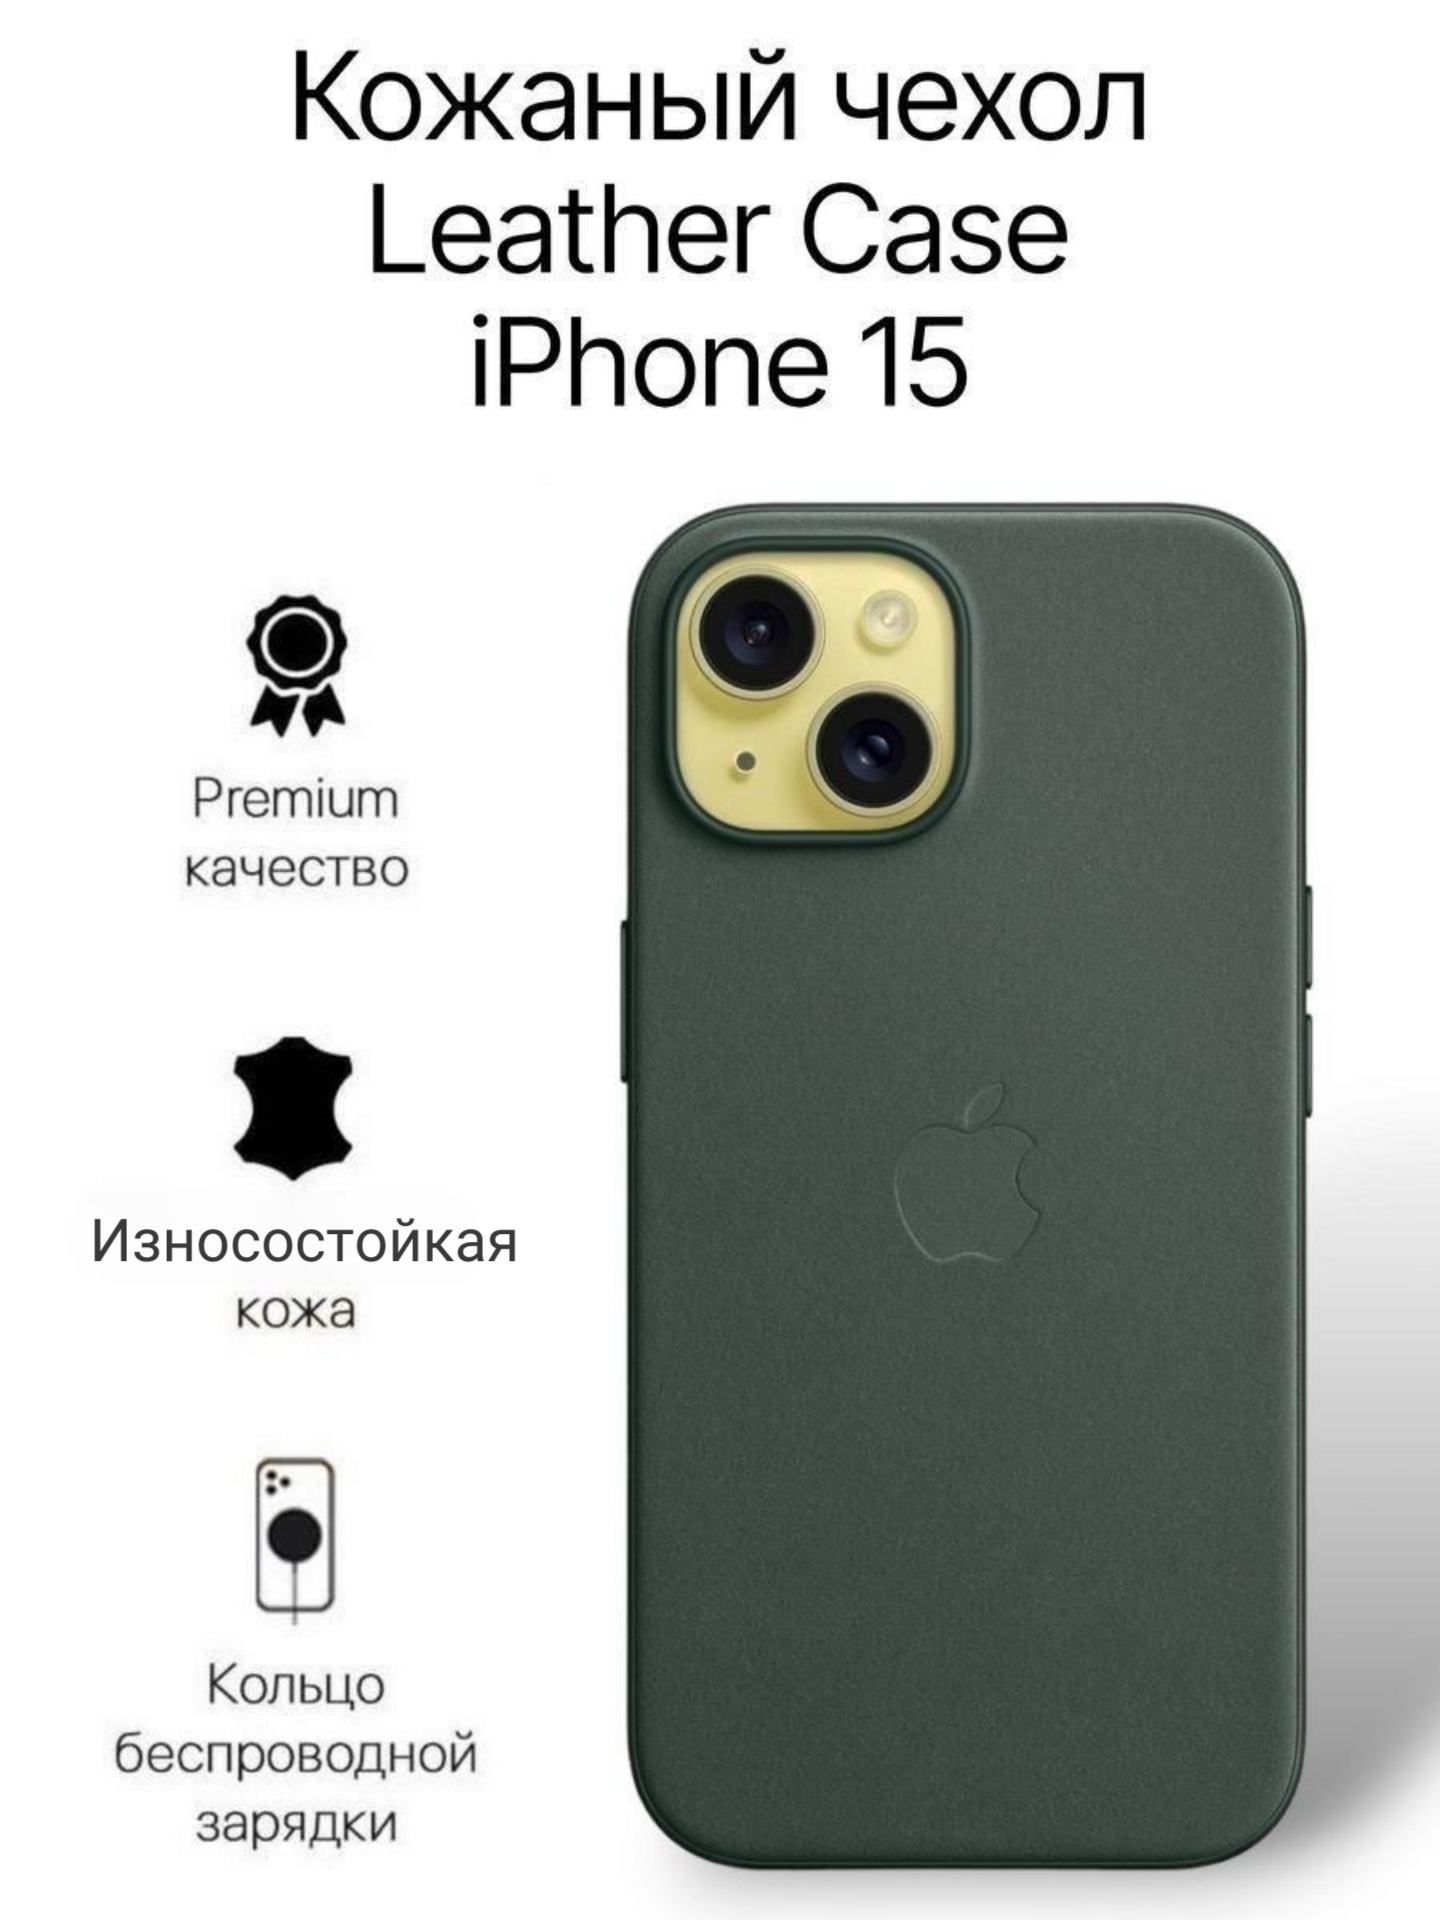 Кожаный чехол на iPhone 15 с функцией MagSafe, темно зеленый - Shirt